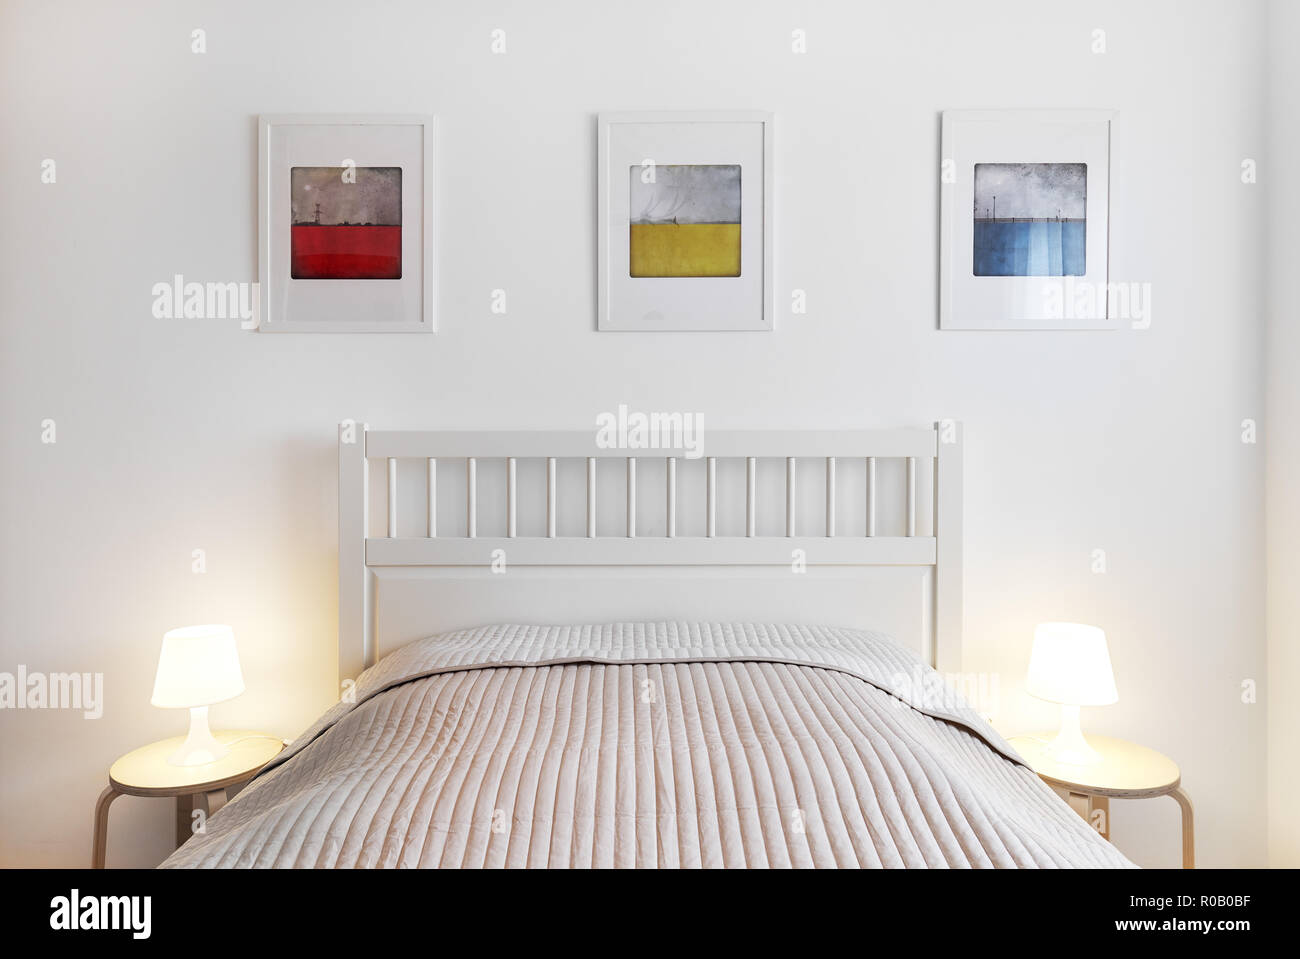 Innenraum der Schlafzimmer. Einfach, komfortabel und stilvoll. Lampen  Beleuchtung auf ein Bett, Tisch, Bett mit Wolldecke, Dekoration an der Wand  drei farbenfrohe Bilder Stockfotografie - Alamy